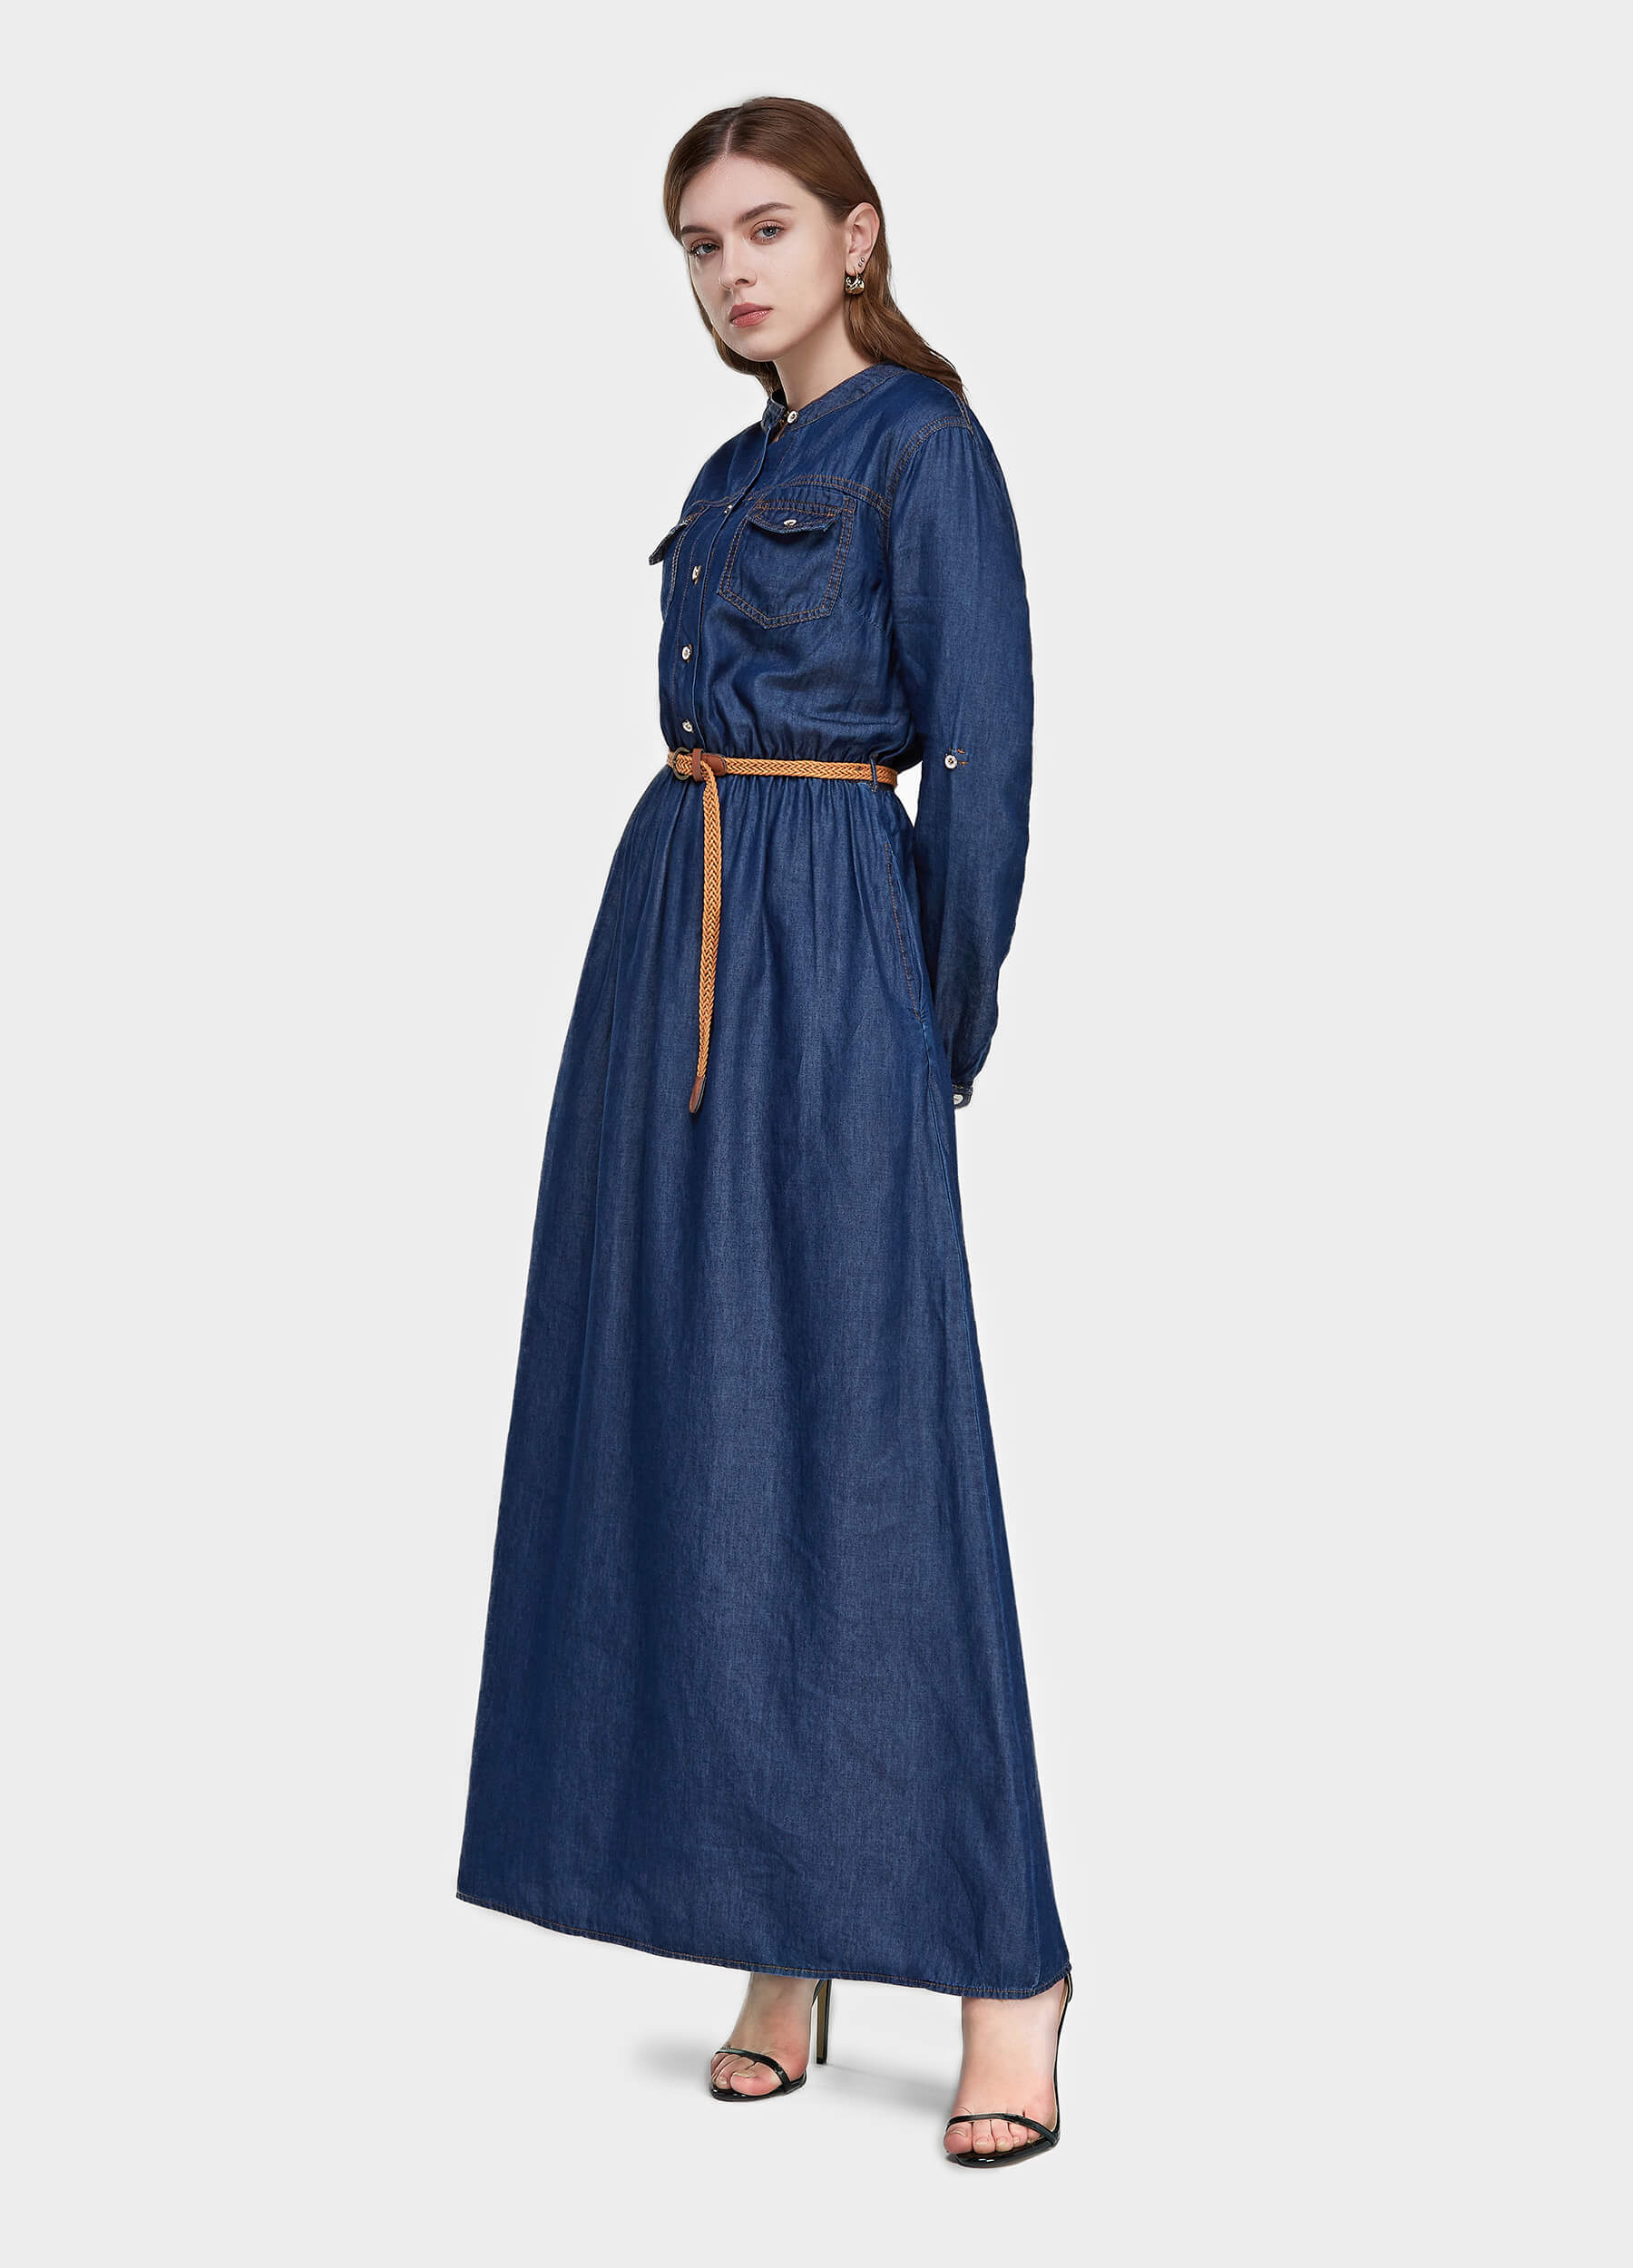 Women's Long Sleeve Denim Shirt Dress-Mid Blue side view